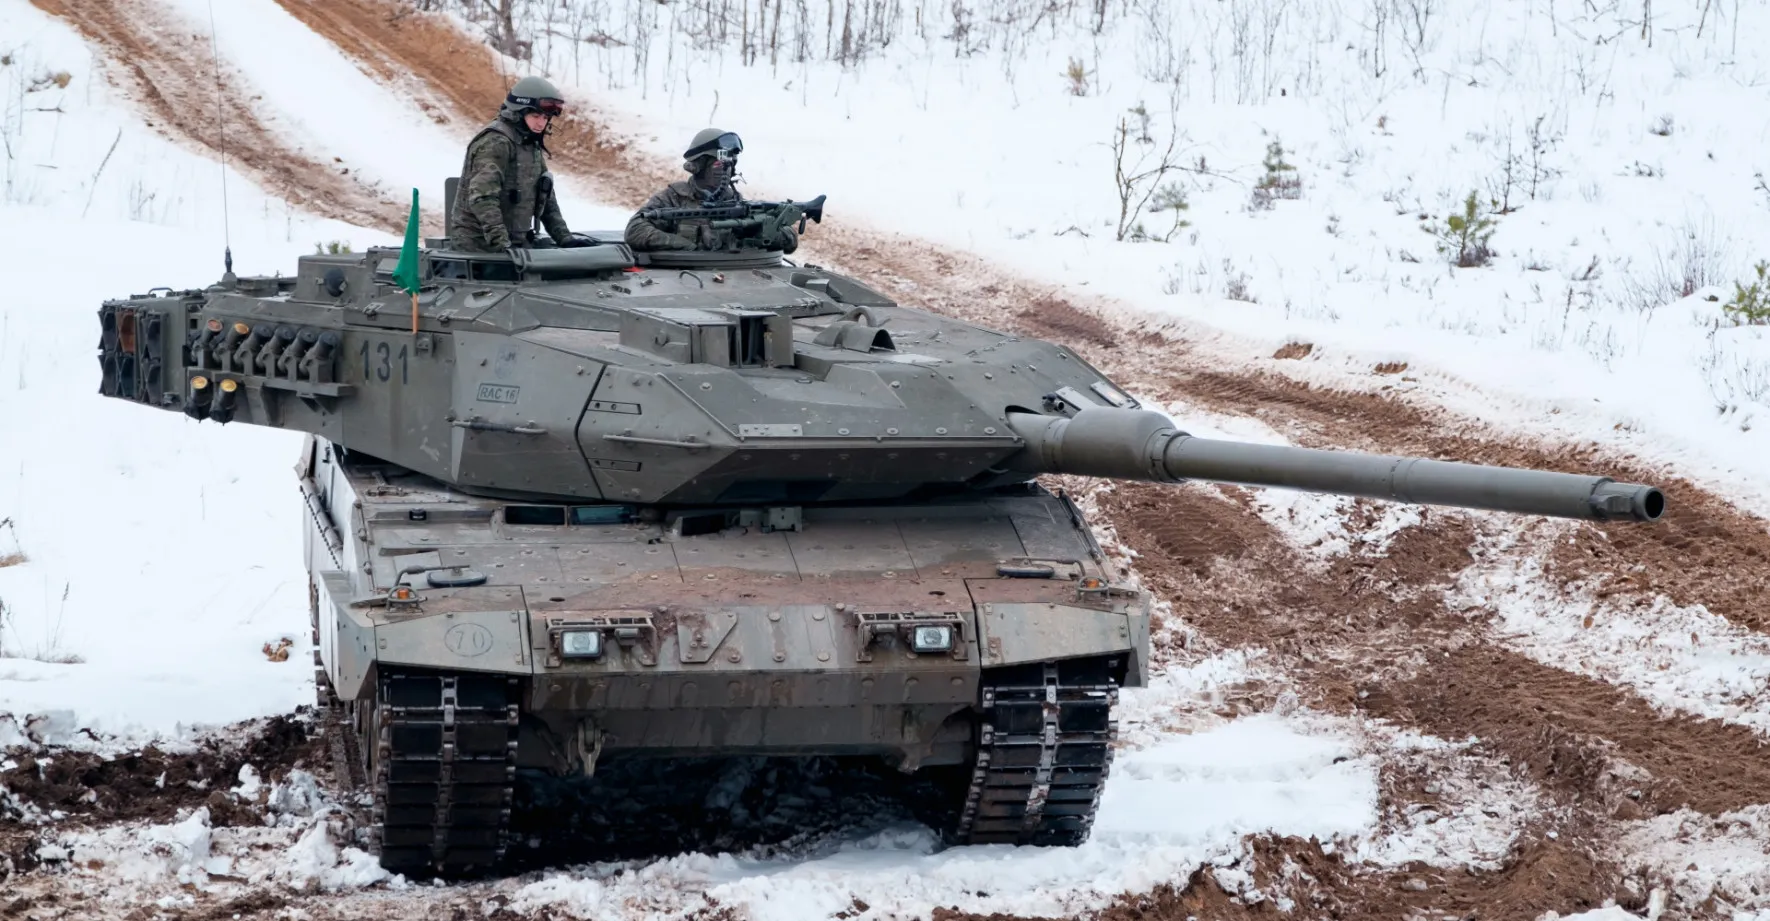 Česko chce koupit vysloužilé tanky Leopard ze Švýcarska, uvedla ministryně